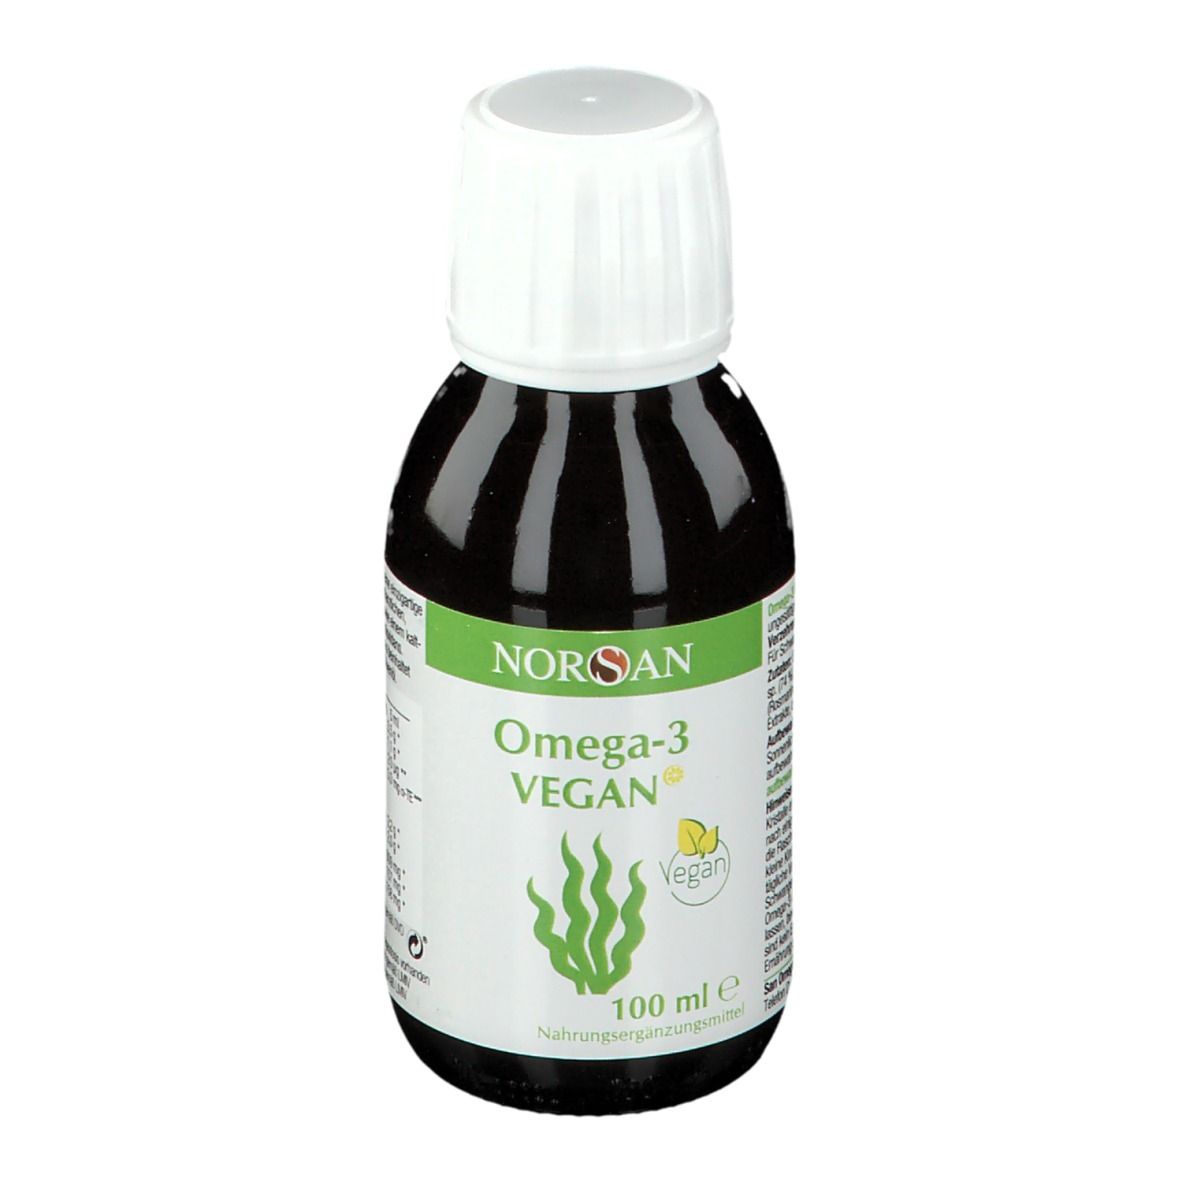 NORSAN Omega-3 Vegan - Algenöl 100 ml - SHOP APOTHEKE